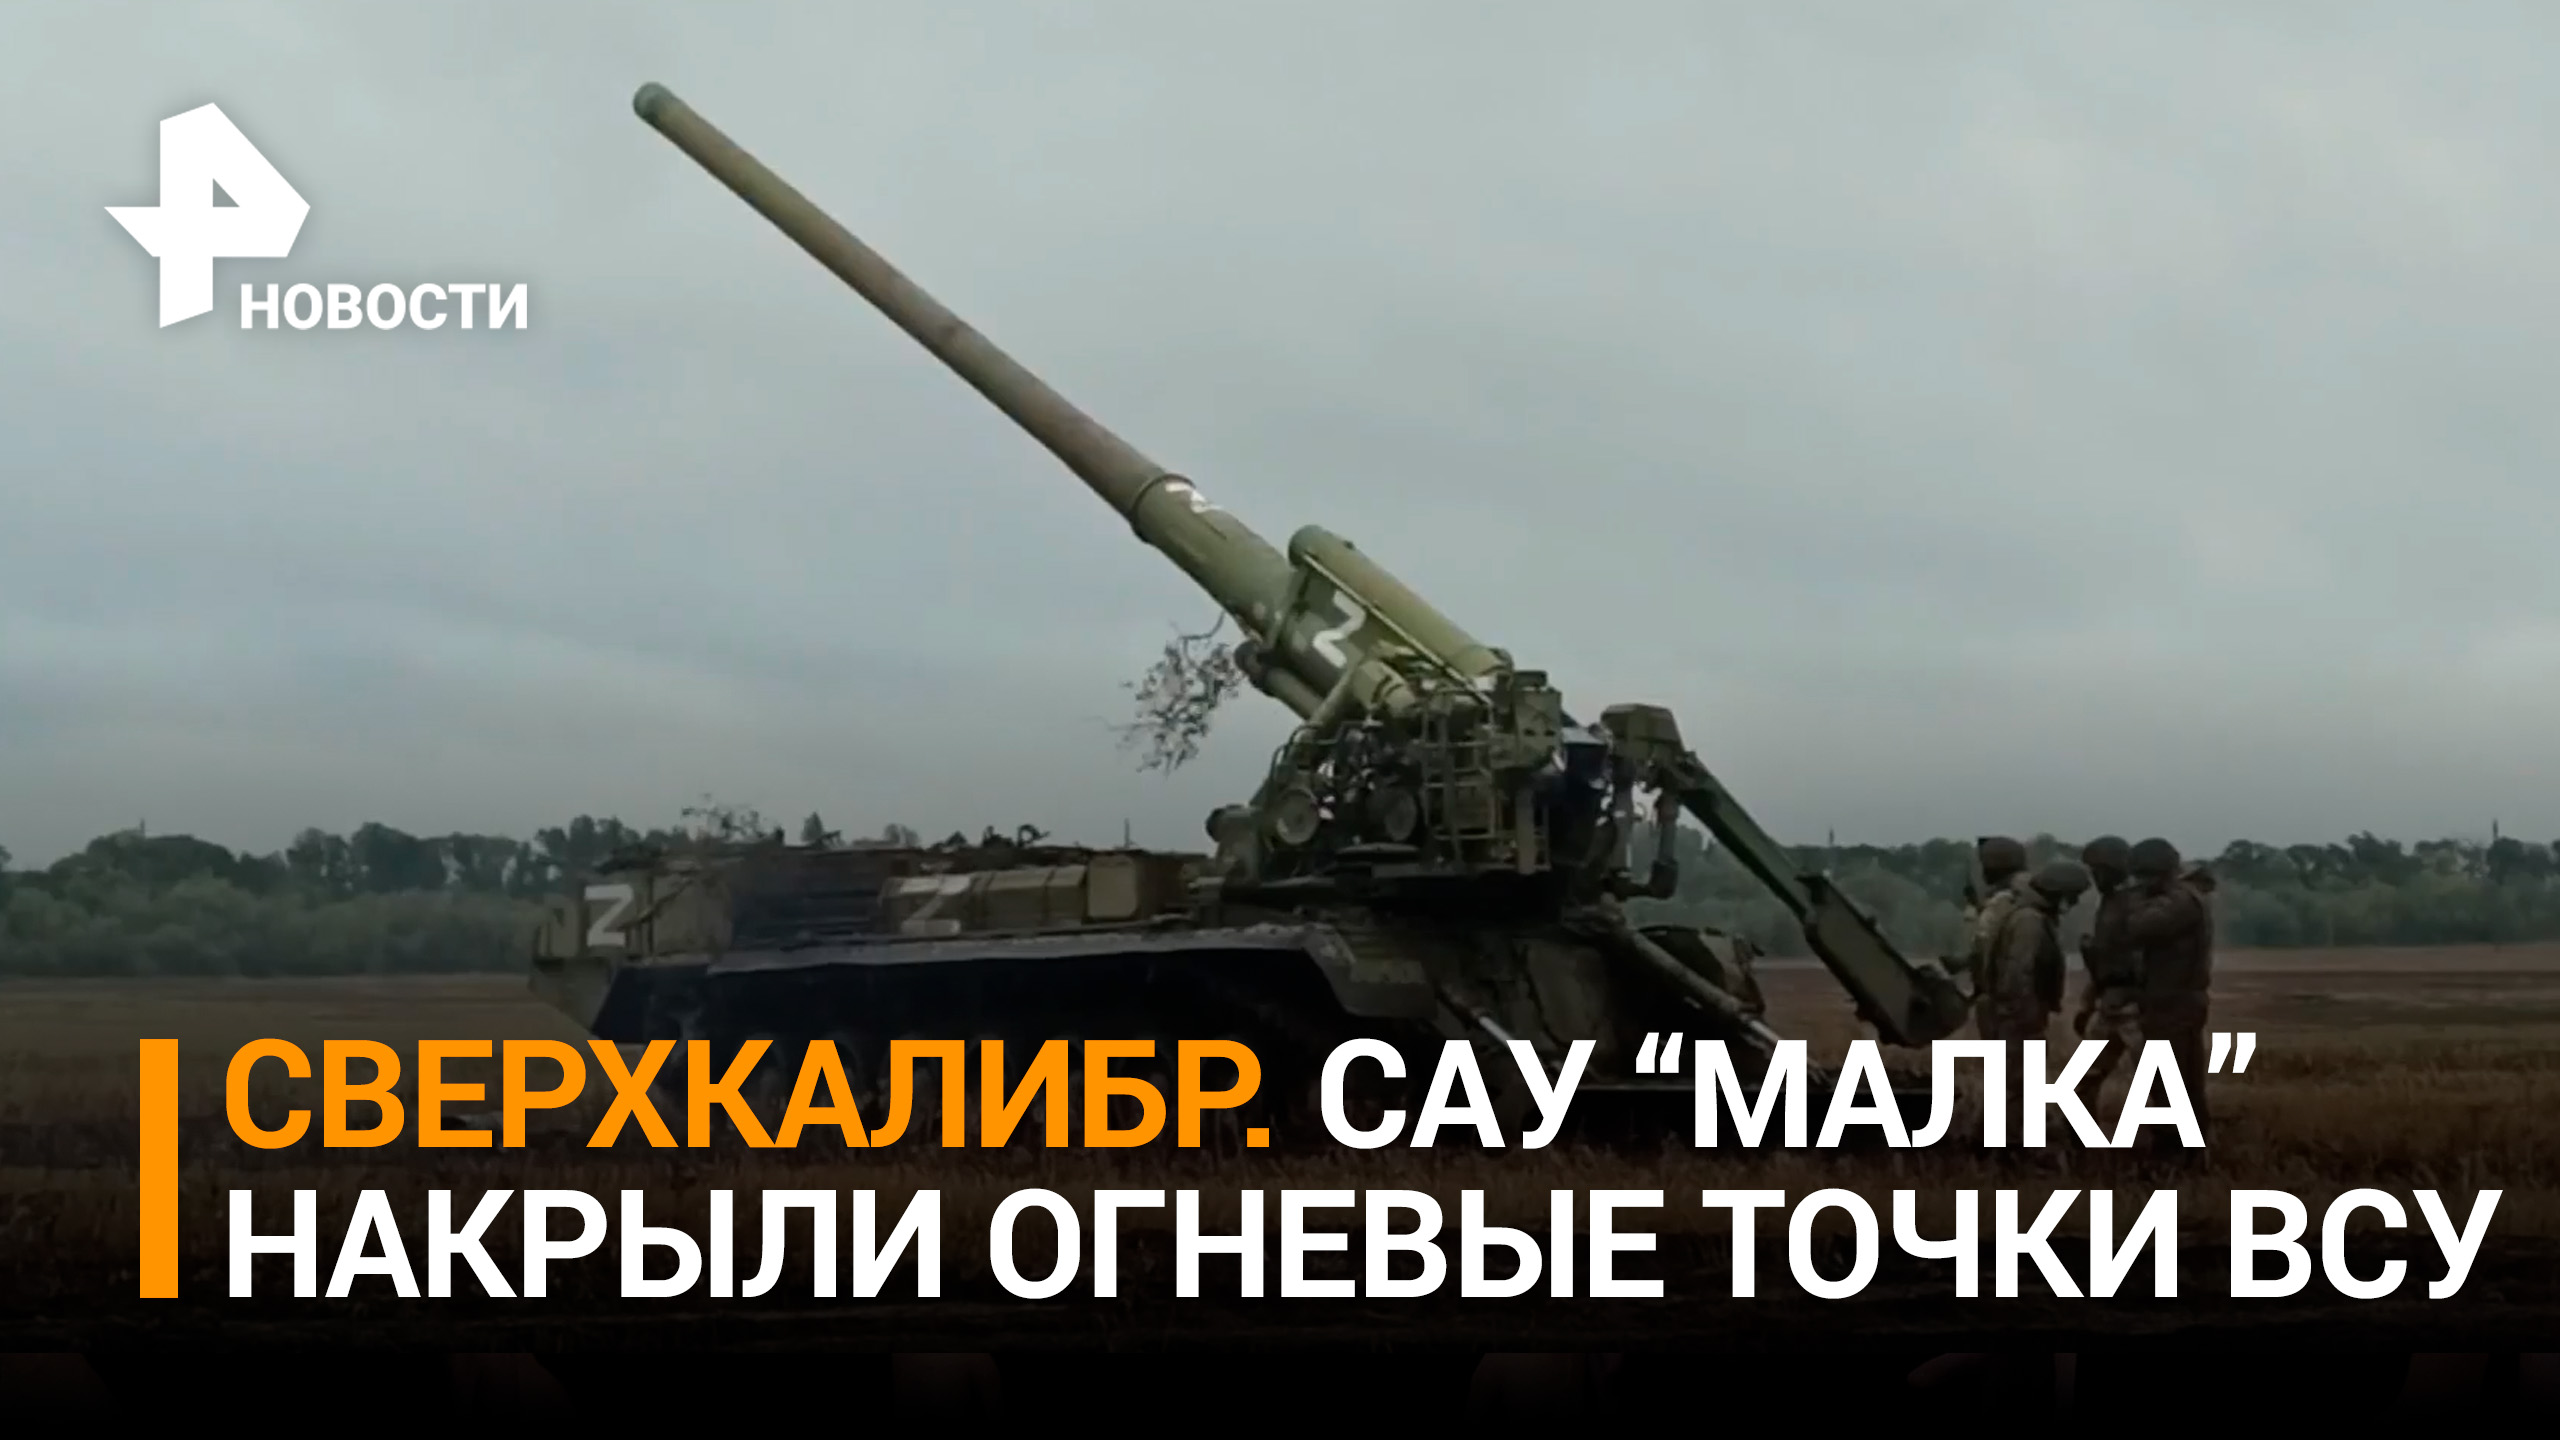 Удар САУ "Малка" по выявленной украинской позиции / РЕН Новости